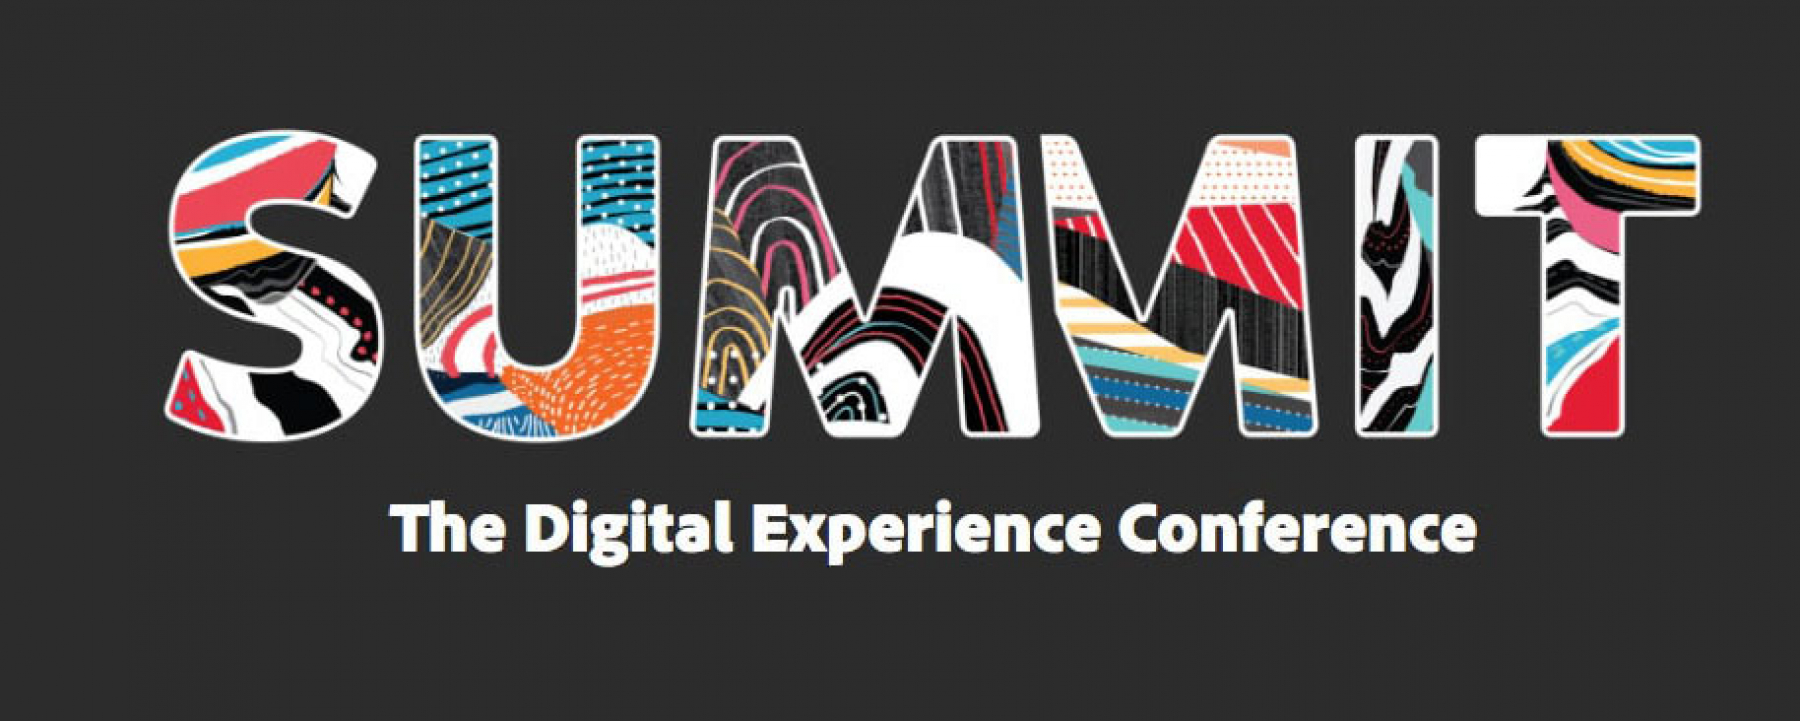 Conférence en ligne The Digital Experience Conference Summit 2020, organisé par Adobe, le 31 mars 2020